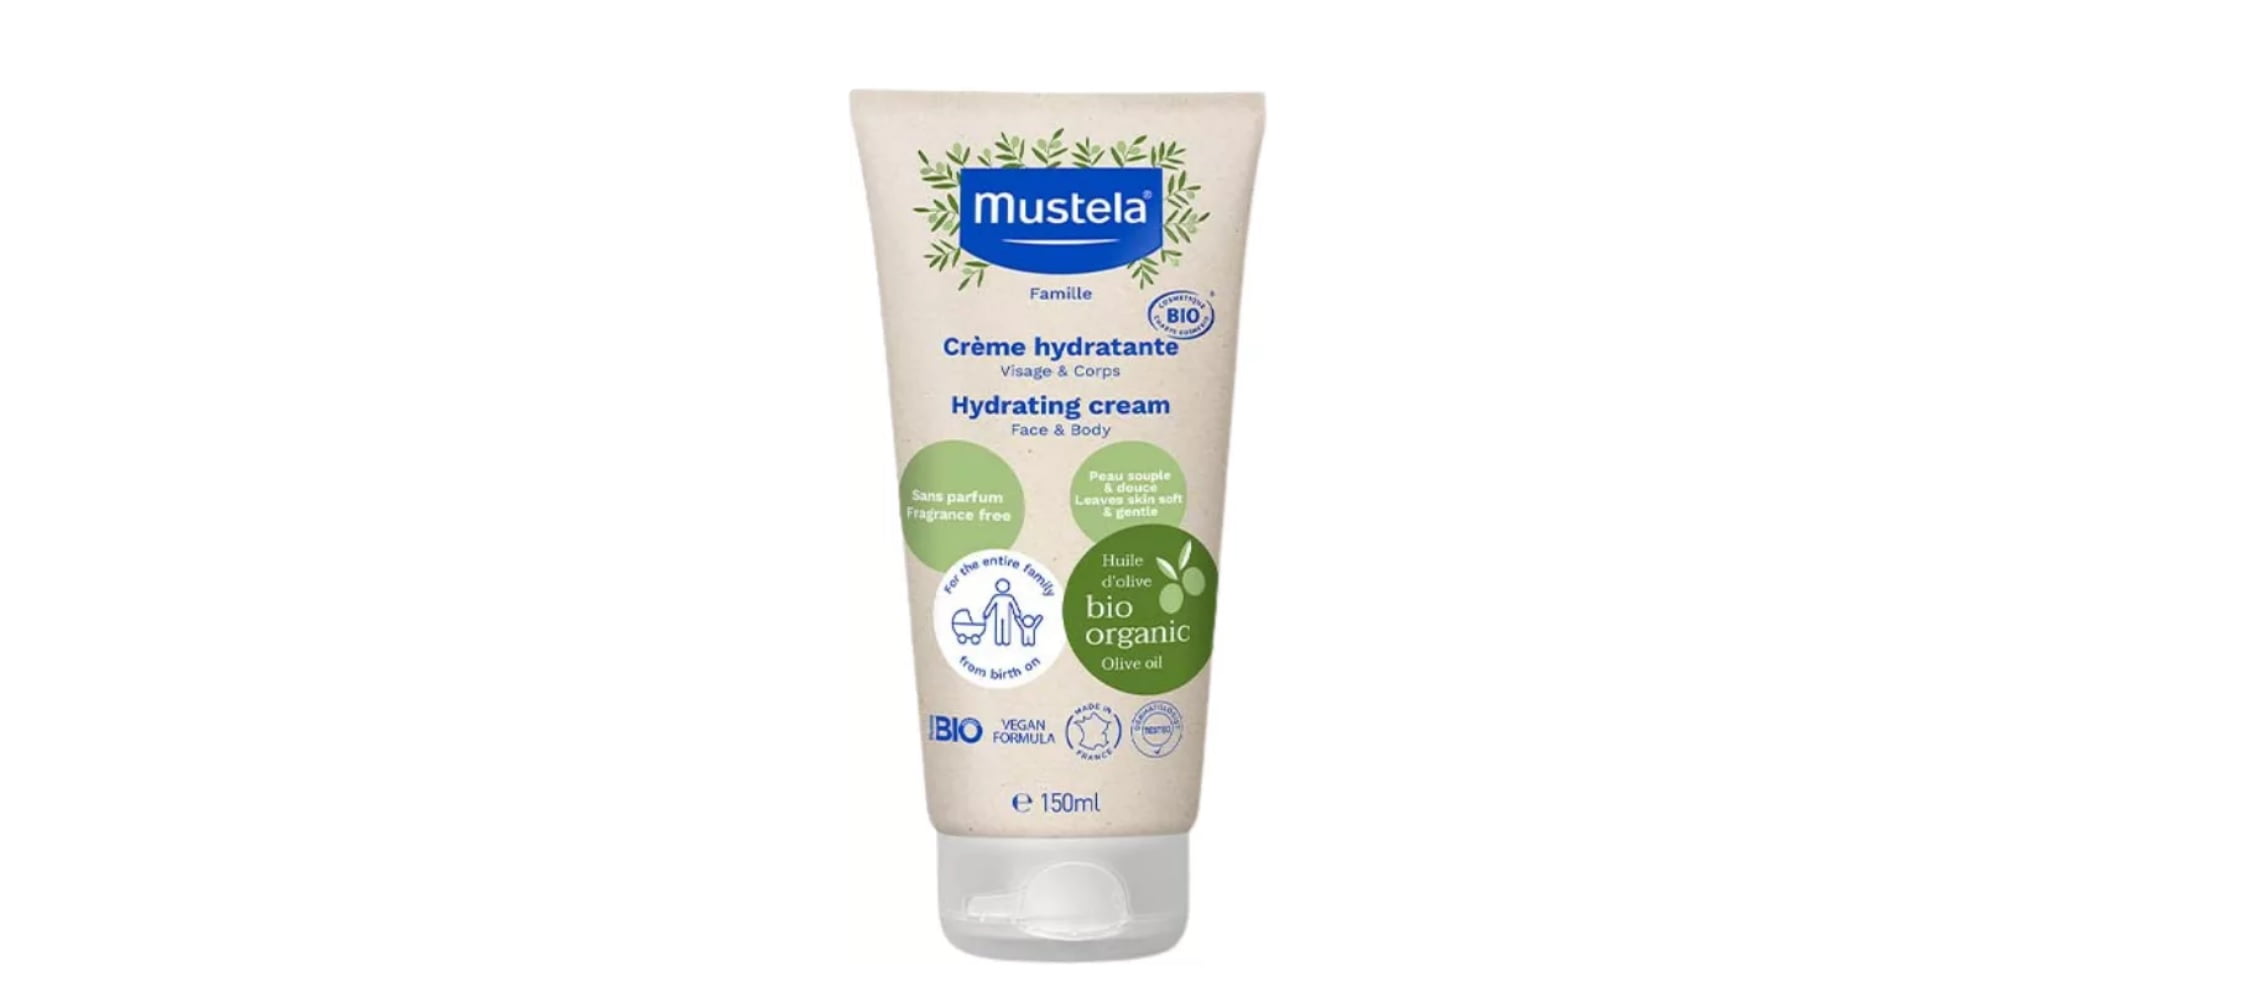 Crema hidratantă certificată BIO de la Mustela